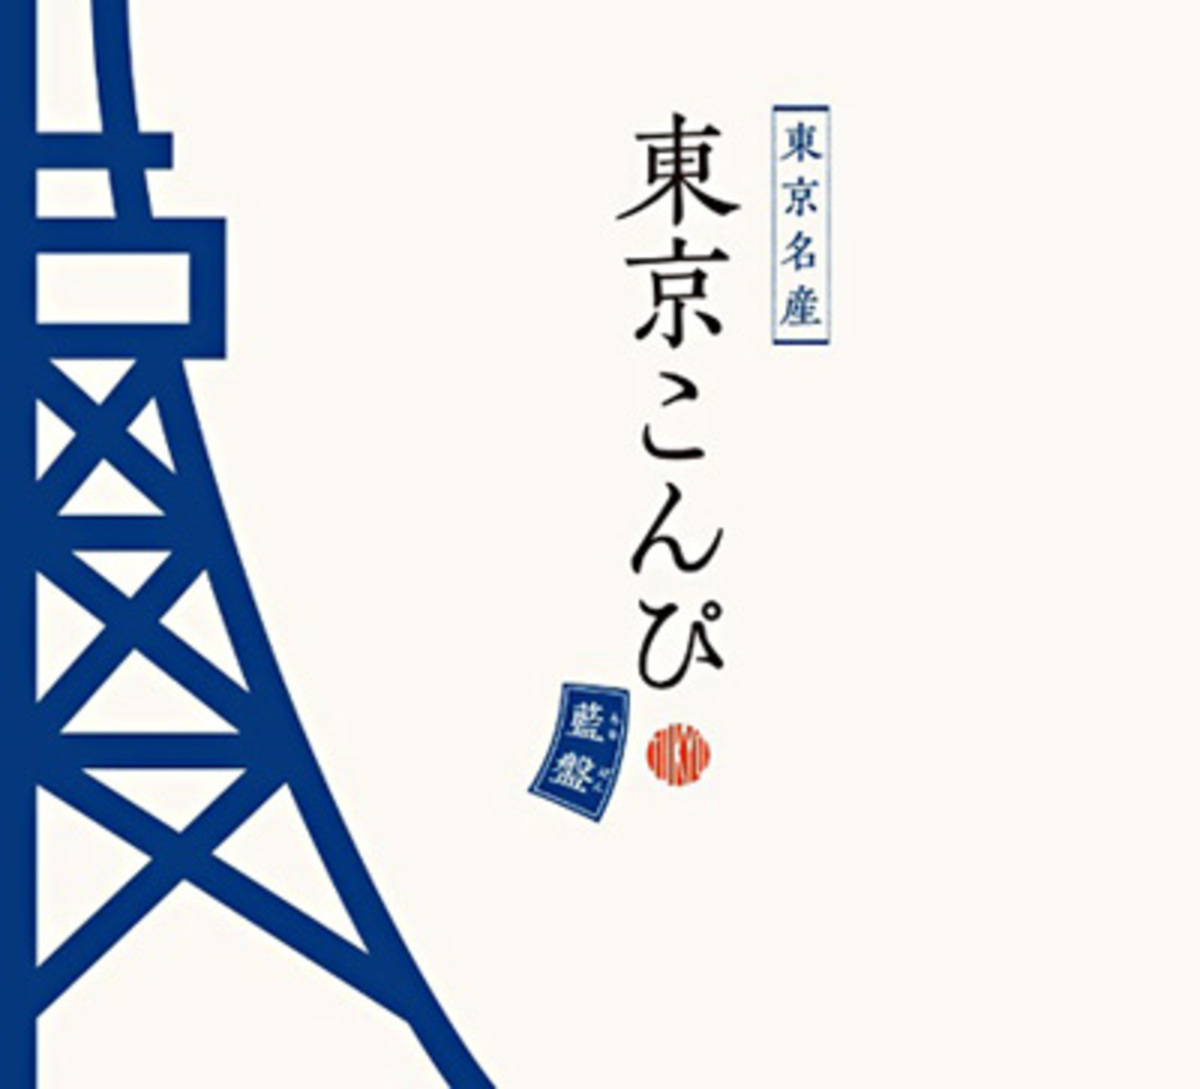 東京こんぴ 第2弾 藍盤 が5月に登場